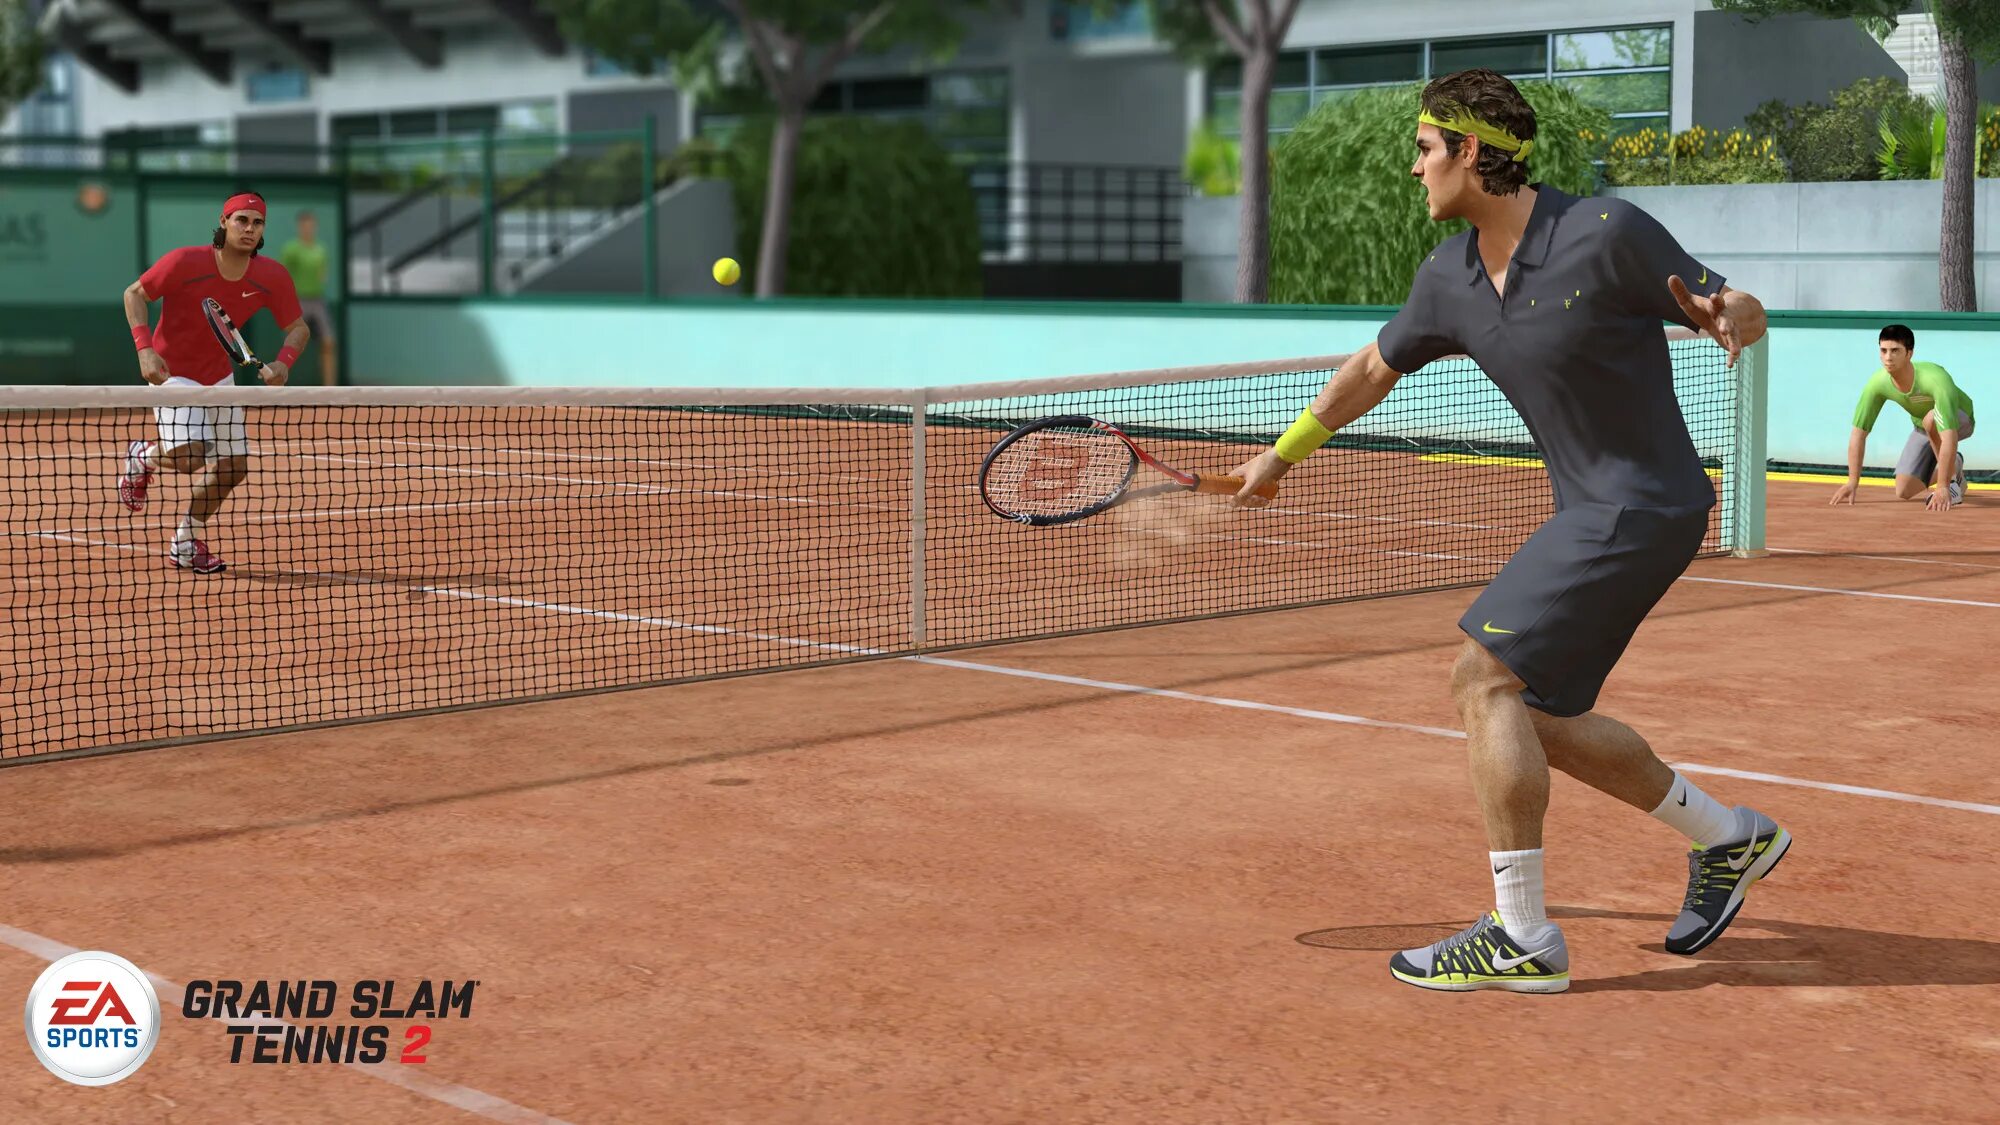 Игра теннис турнир. Гранд-слэм теннис. Grand Slam Tennis 2. Игра в теннис. Спорт теннис.